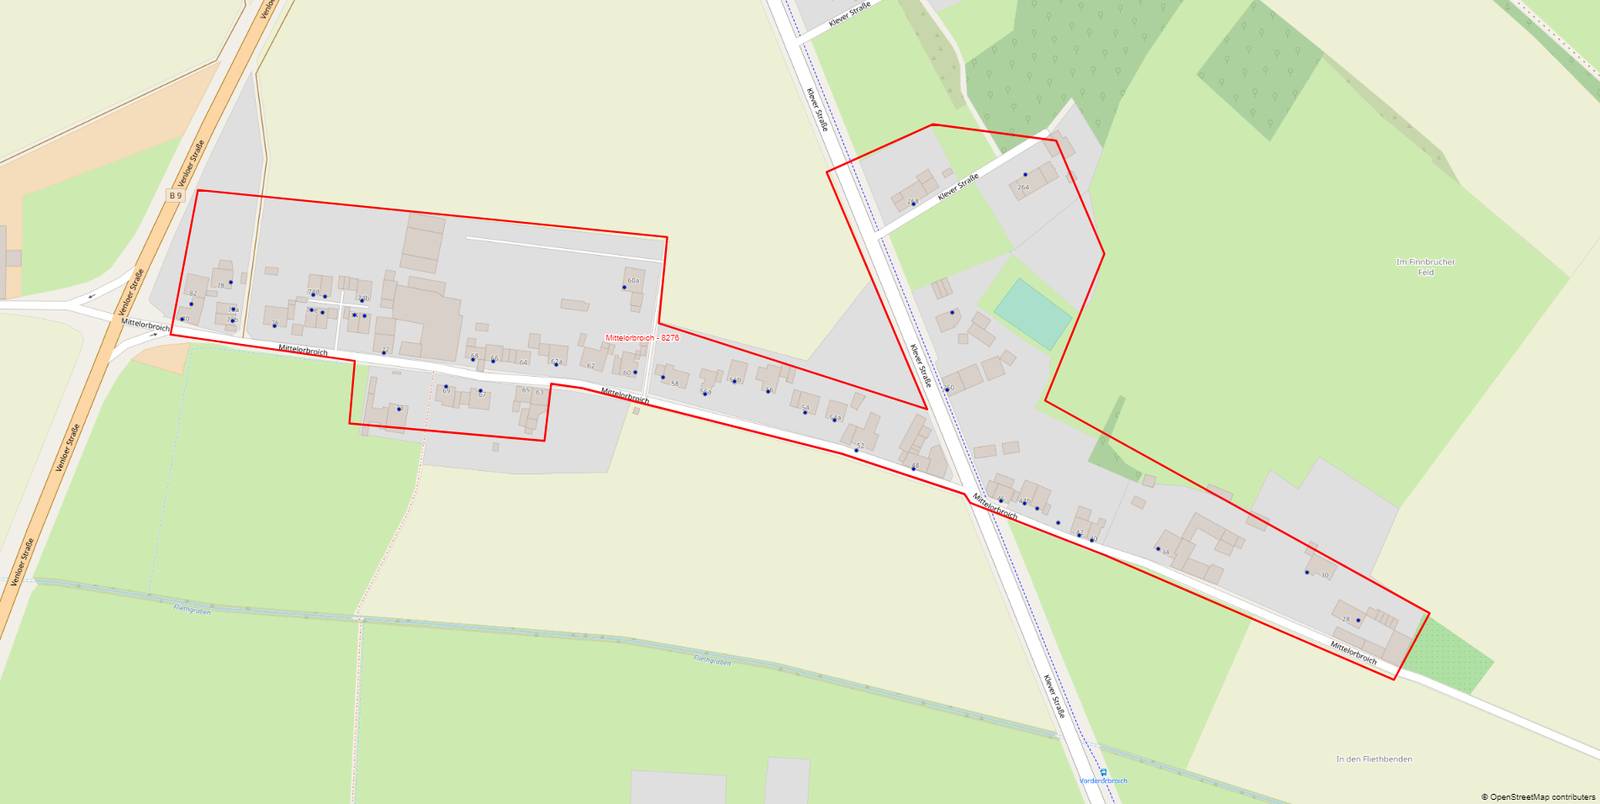 Das Ausbaugebiet in Hüls Mittelorbroich - der rote Rahmen zeigt in welchem Bereich ausgebaut werden könnte